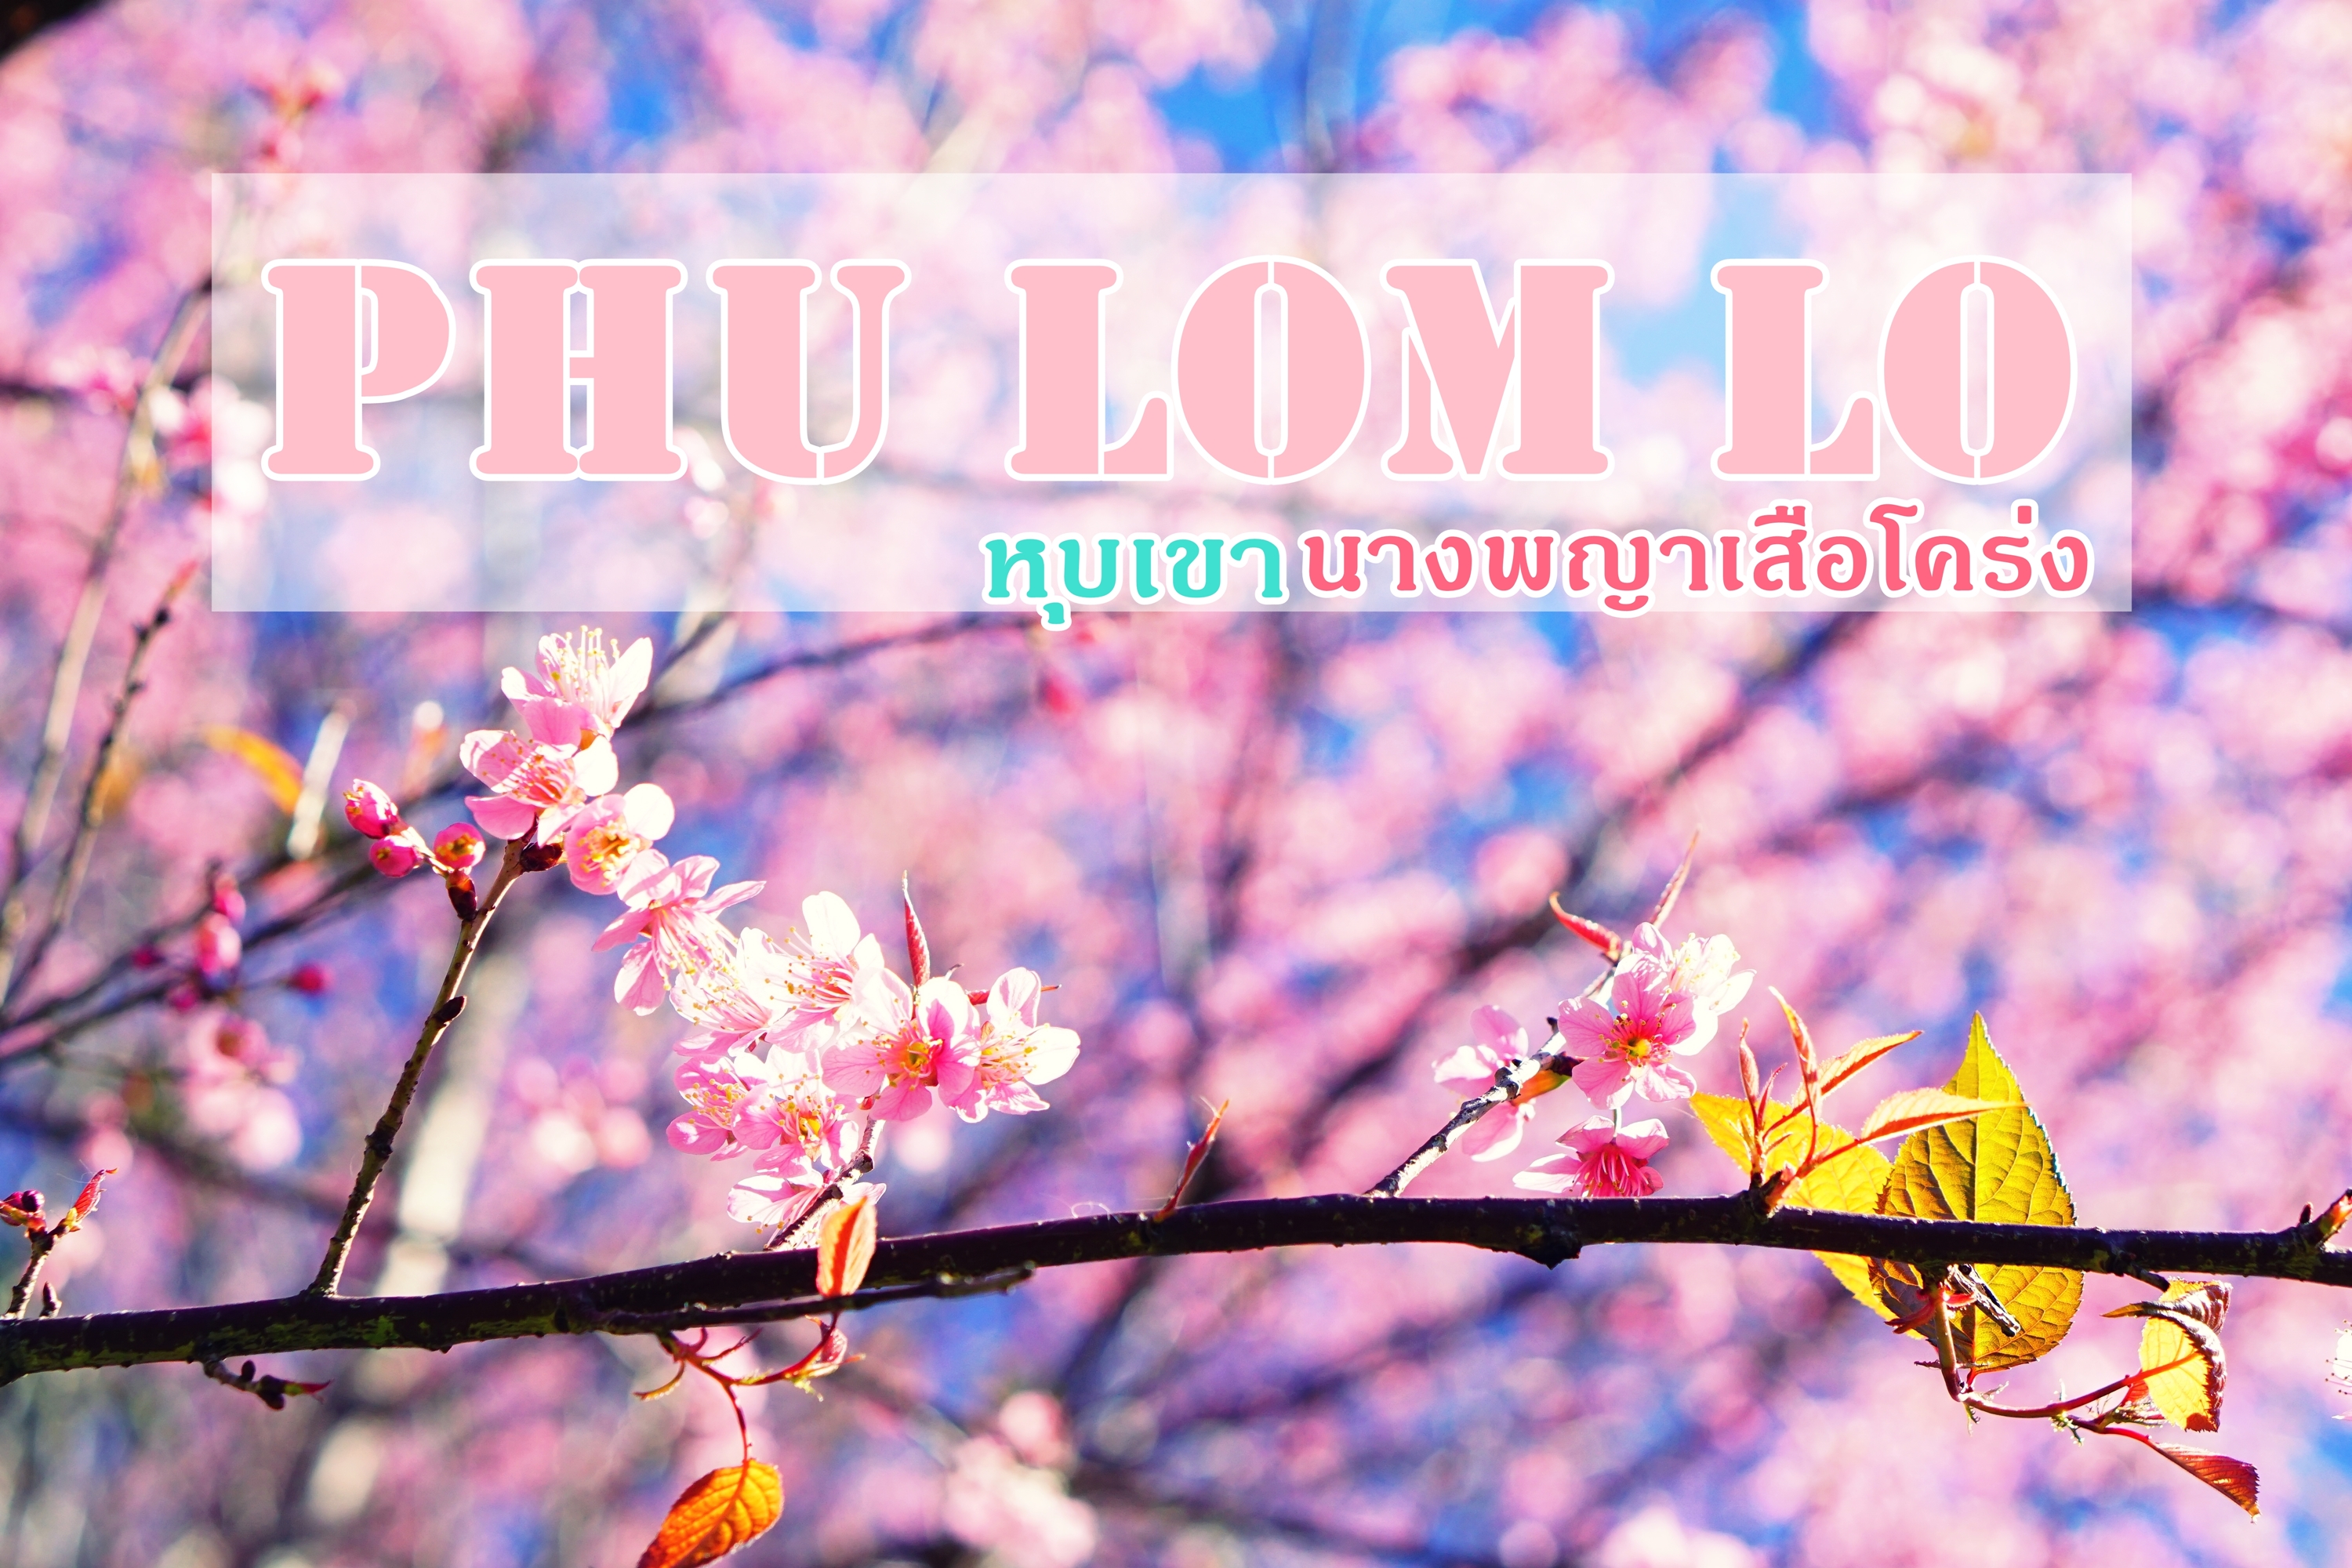 เที่ยว "ภูลมโล" ชมดอกนางพญาเสือโคร่ง (ซากุระเมืองไทย) ที่ใหญ่ที่สุด  ณ อุทยานแห่งชาติภูหินร่องกล้า